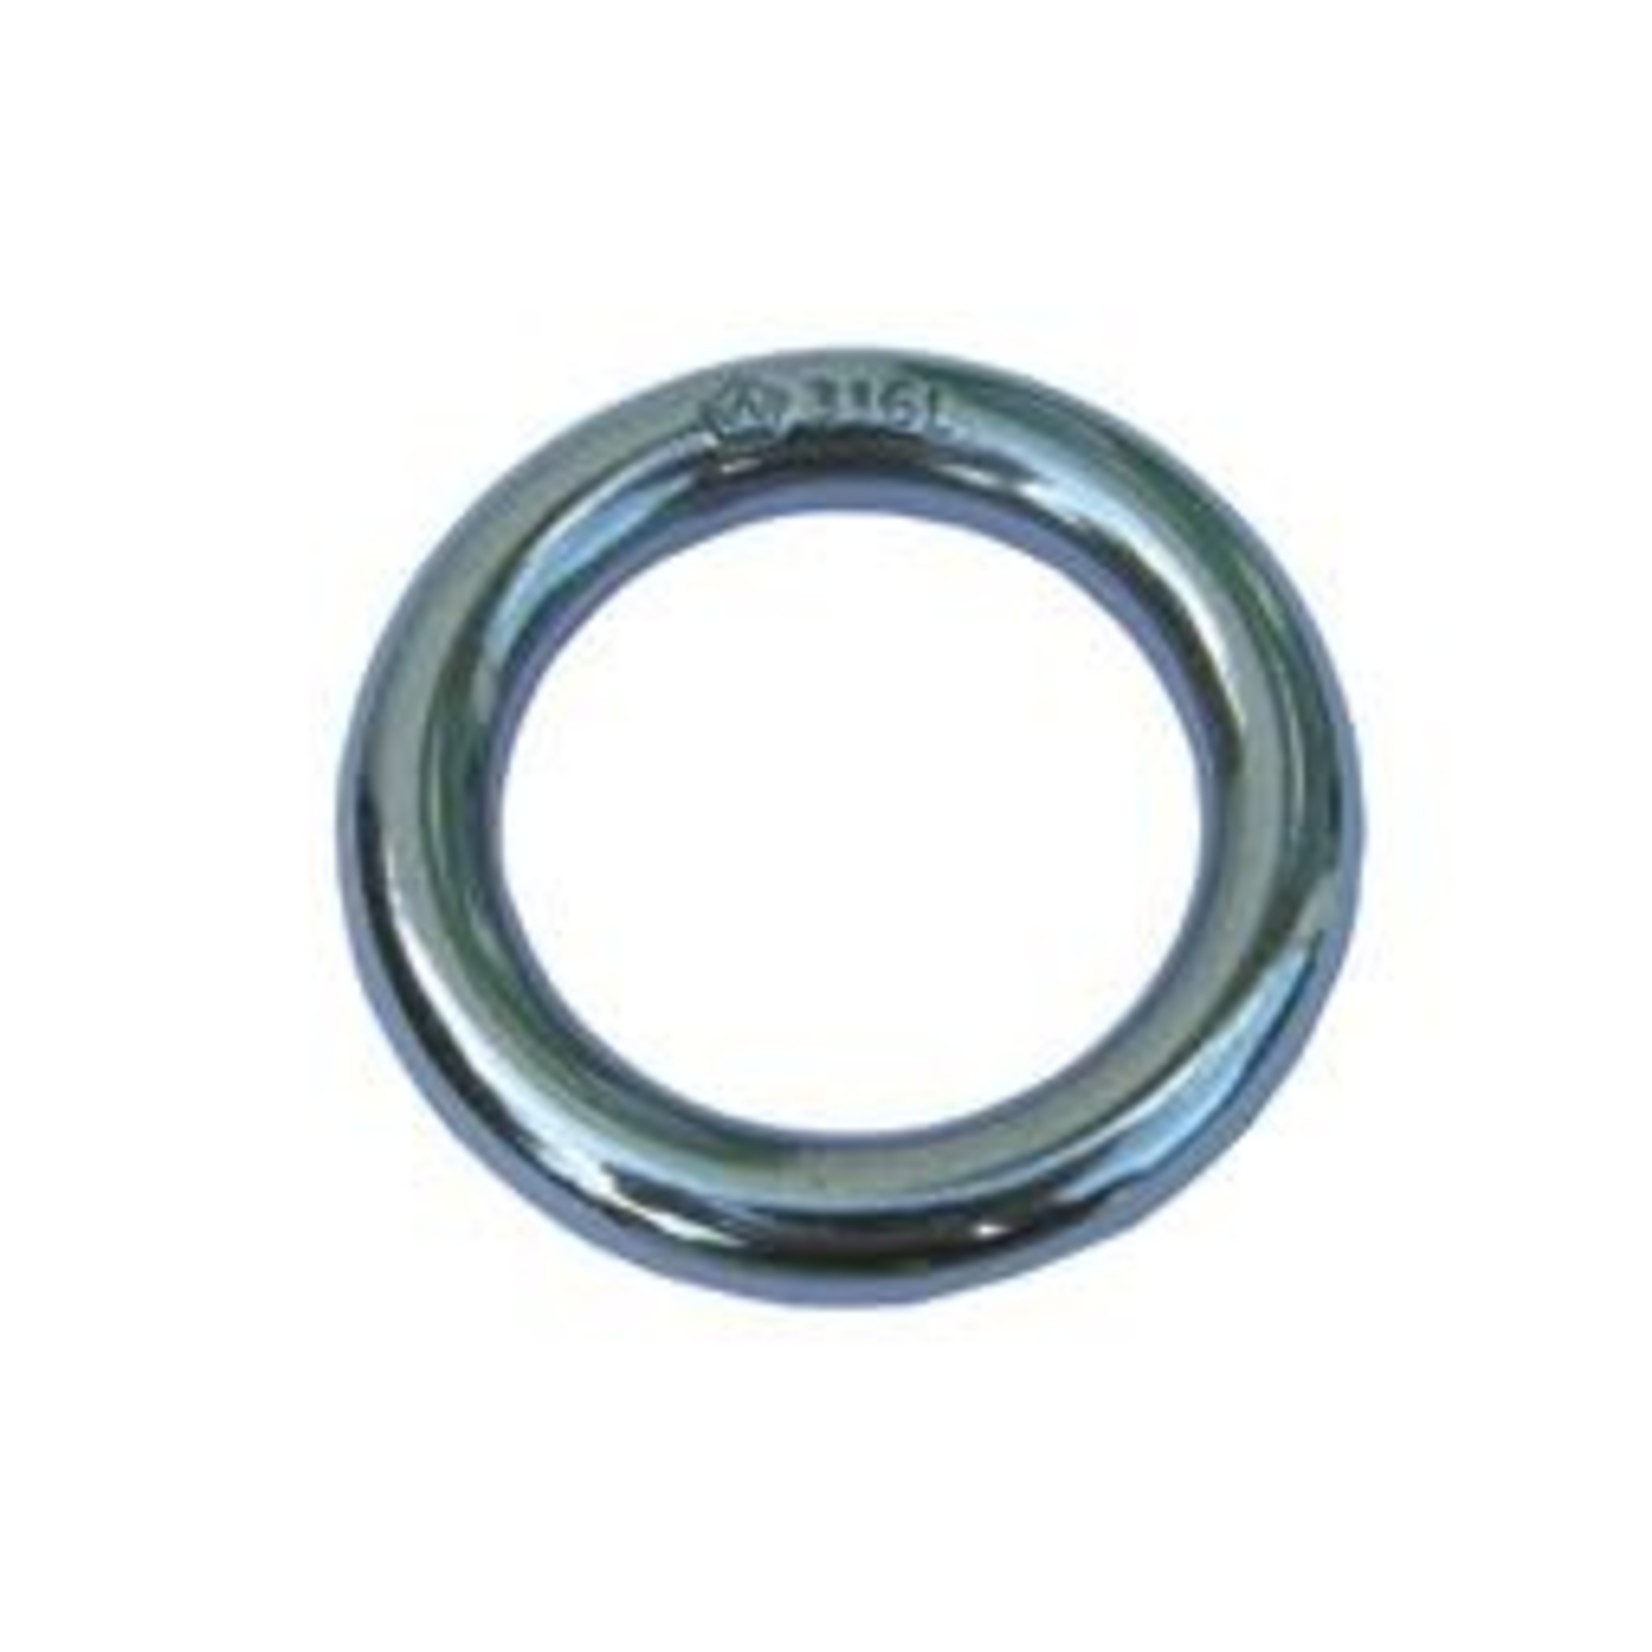 Wichard Ring - 316L - Stock dia: 7.3 mm - Inner dia: 45 mm